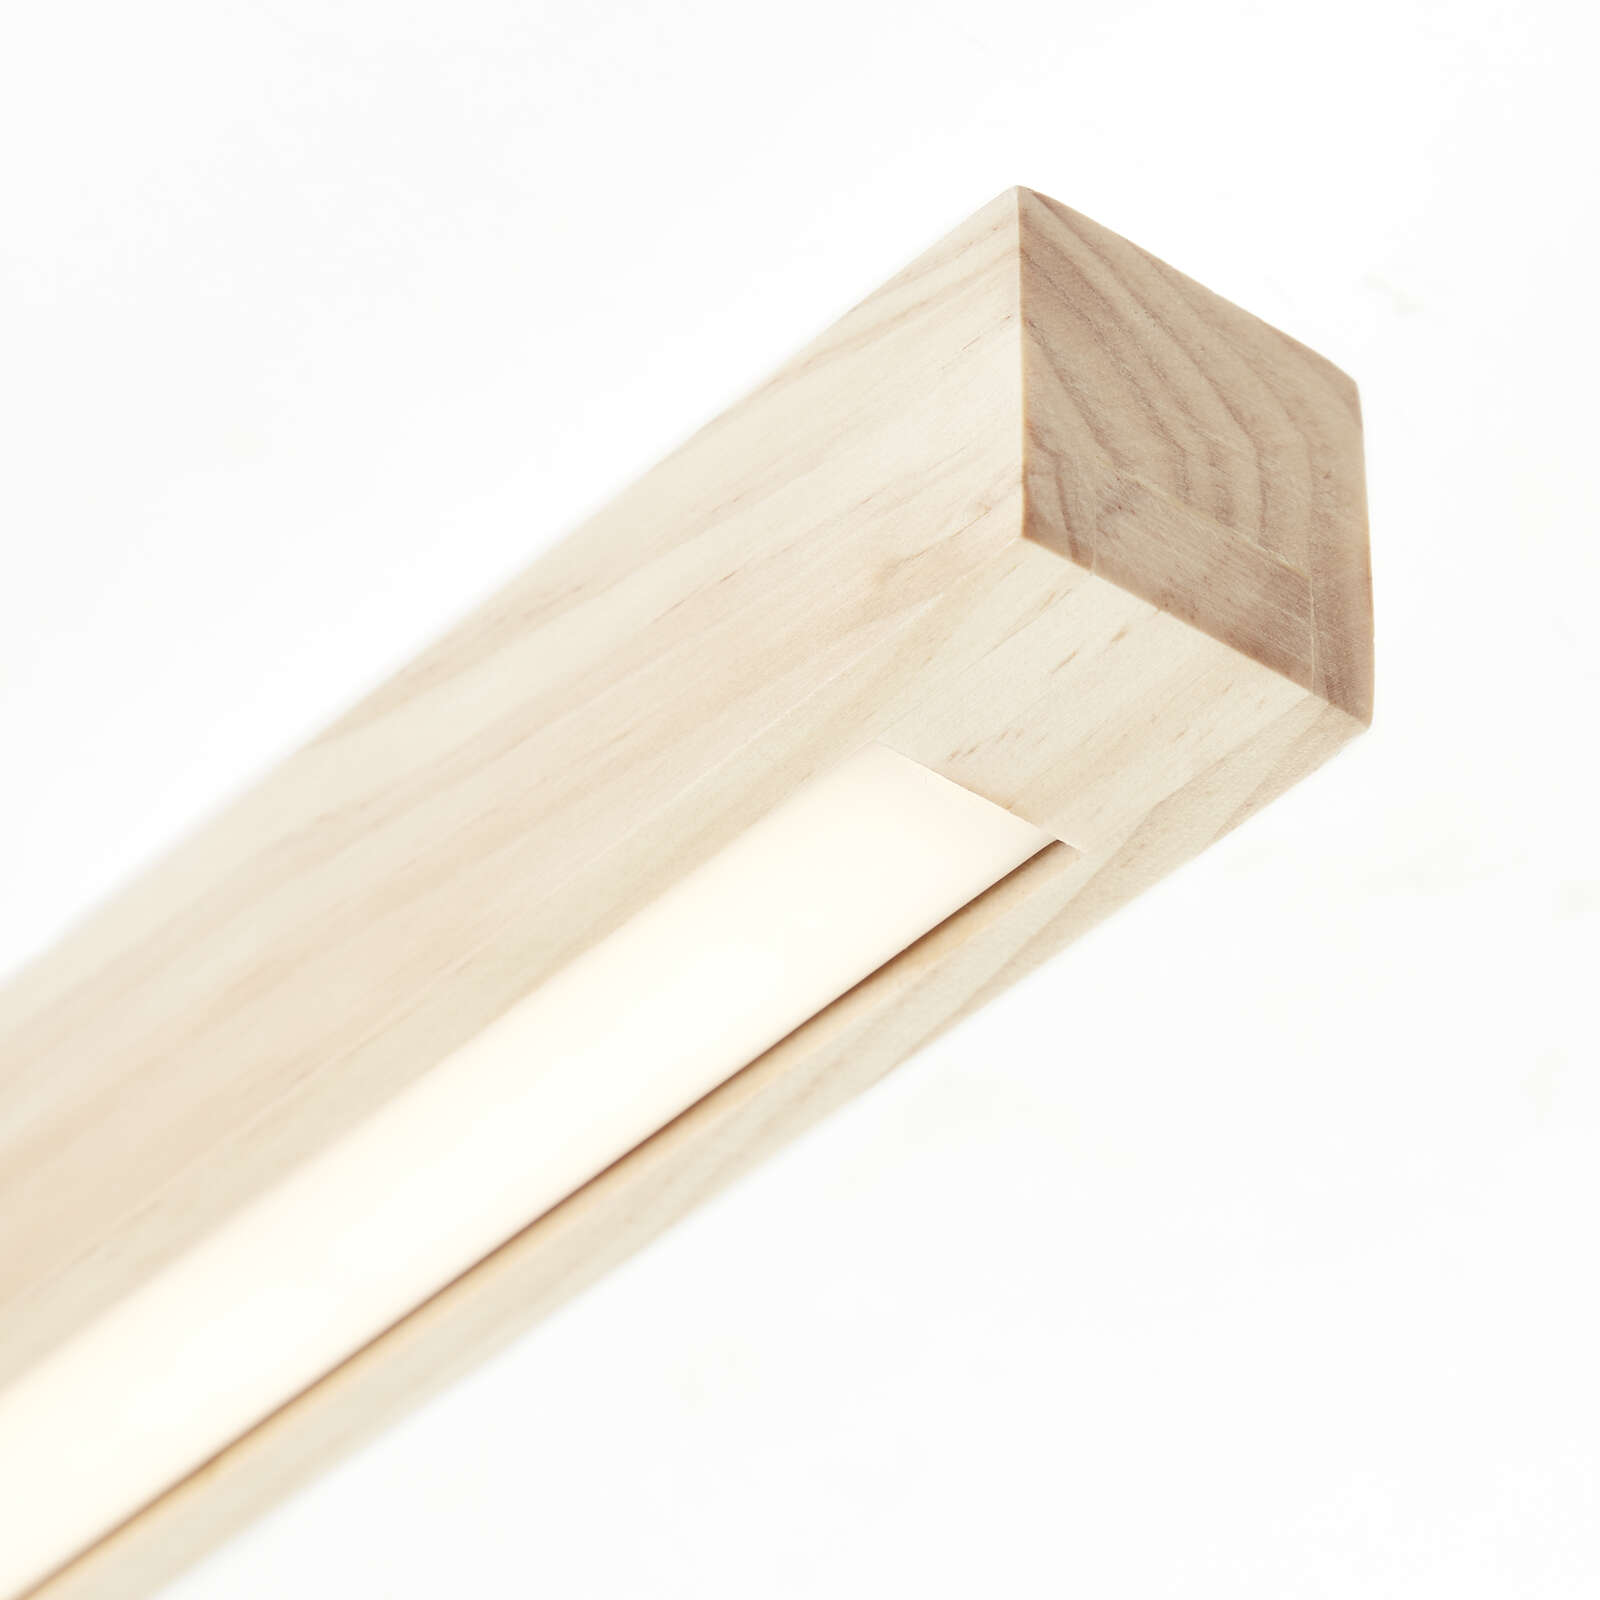             Plafón de madera - Anabelle 1 - Marrón
        